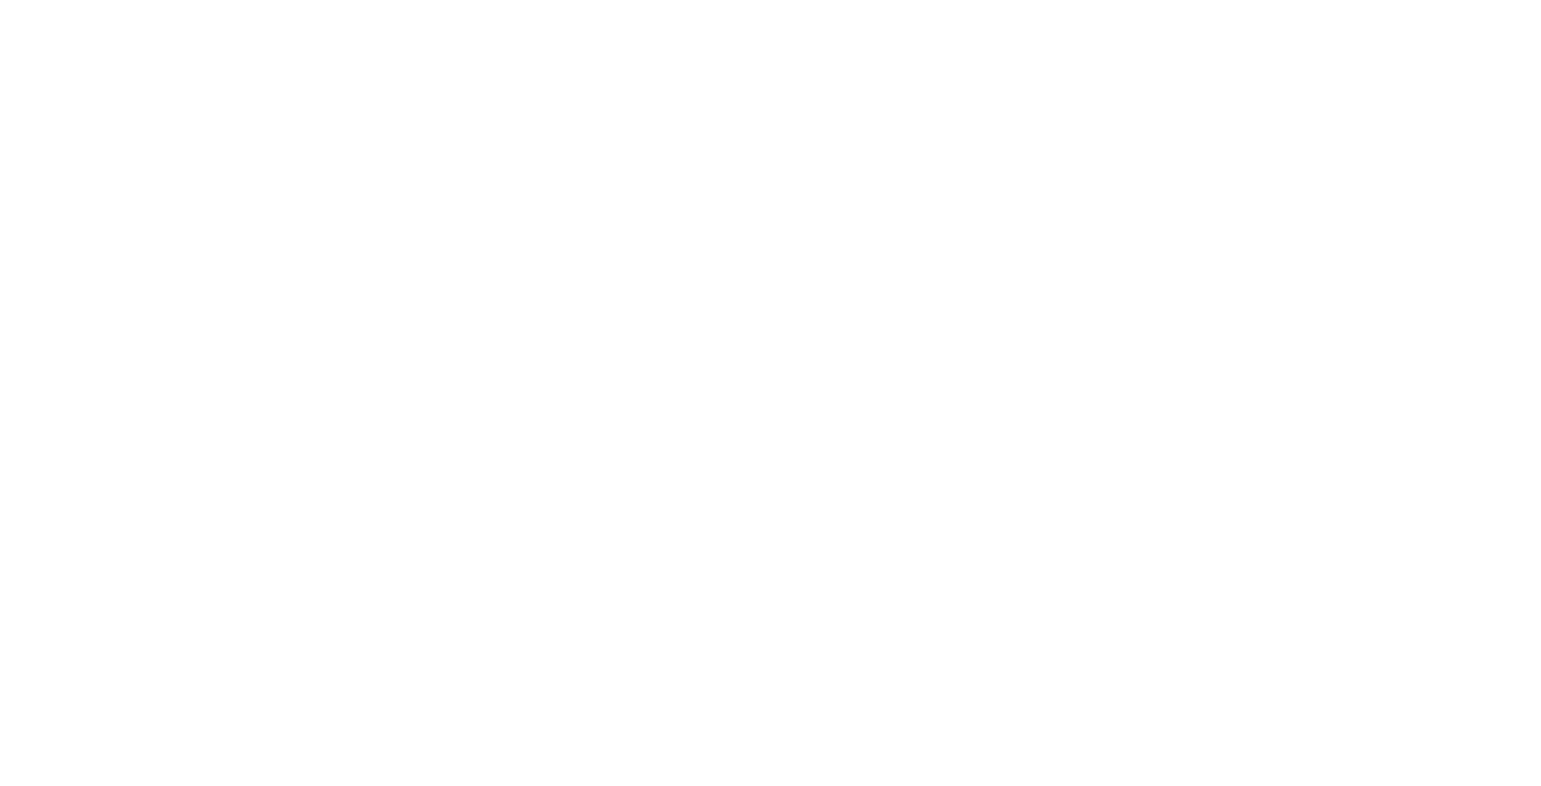 Industrivarden logo for dark backgrounds (transparent PNG)